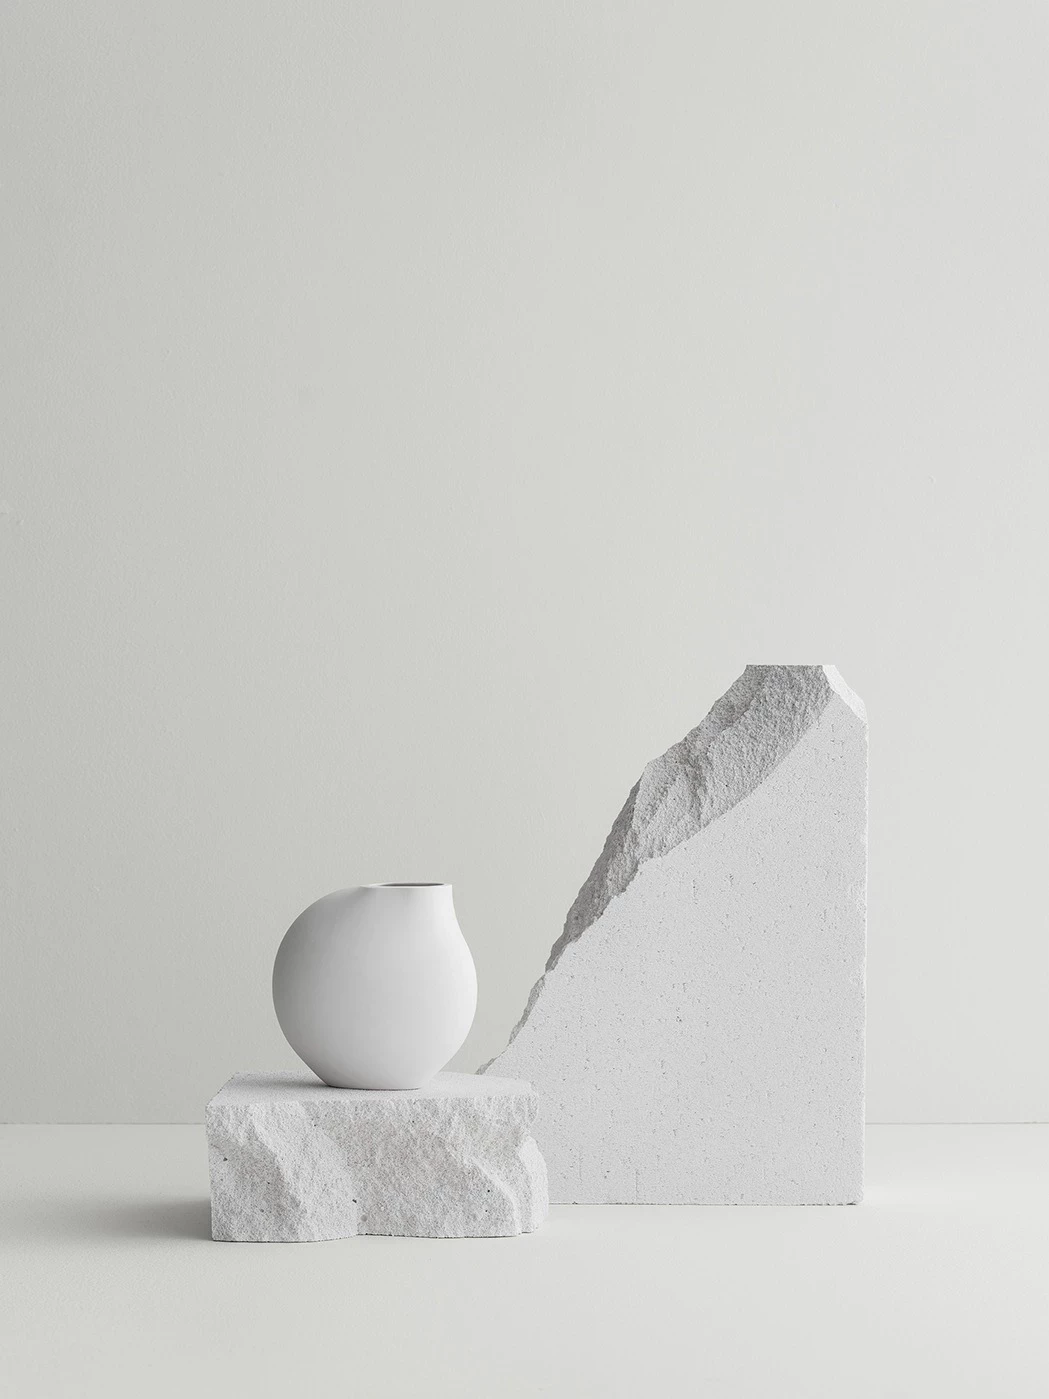 Vase auf einem weißen Stein